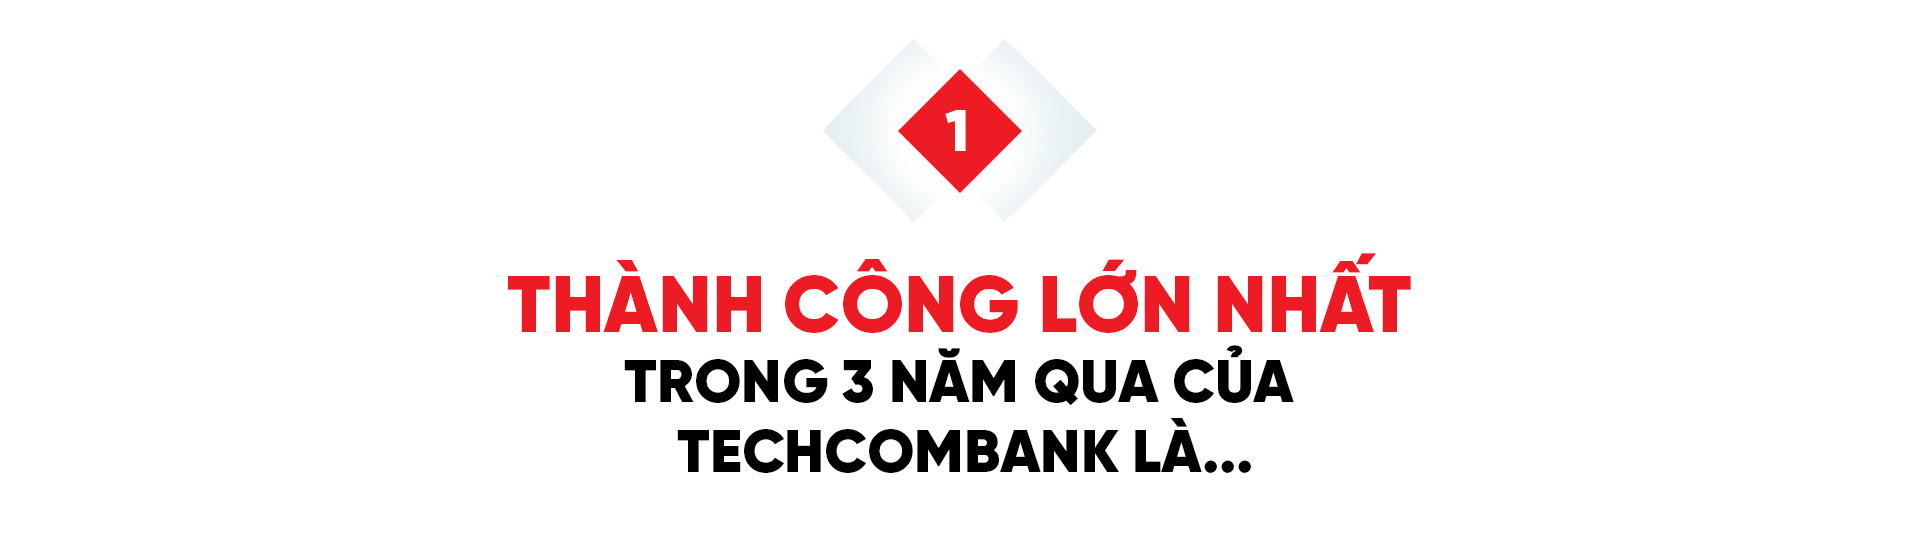 Techcombank khẳng định tham vọng đứng Top 10 Đông Nam Á - Ảnh 1.